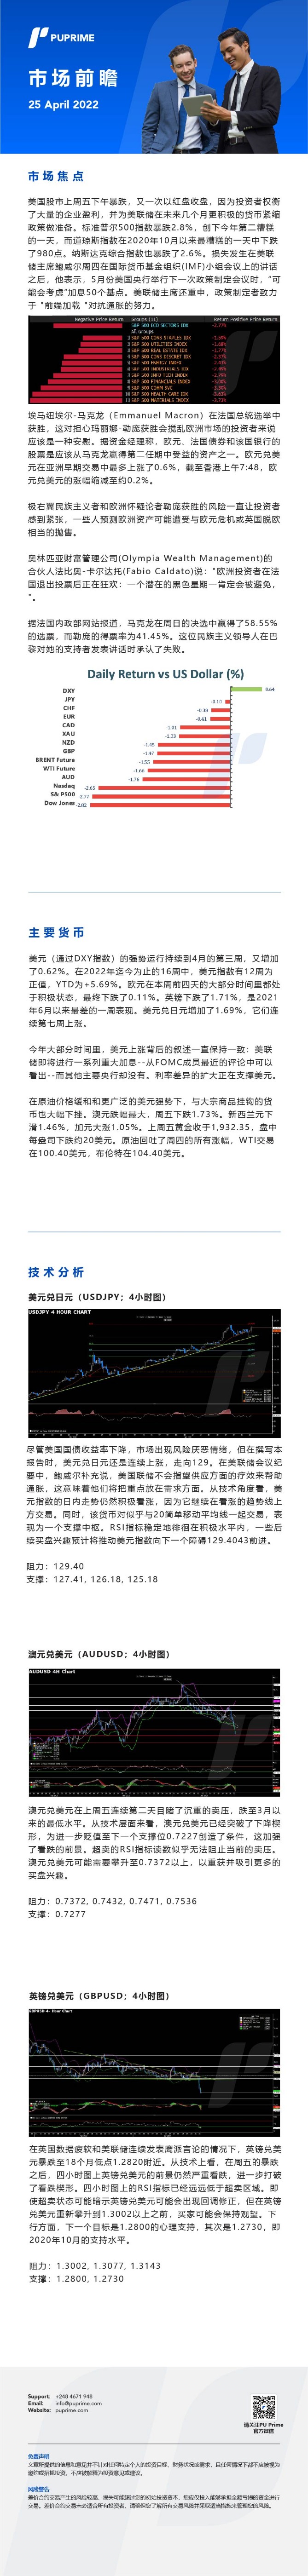 25042022 Daily Market Analysis__CHN.jpg